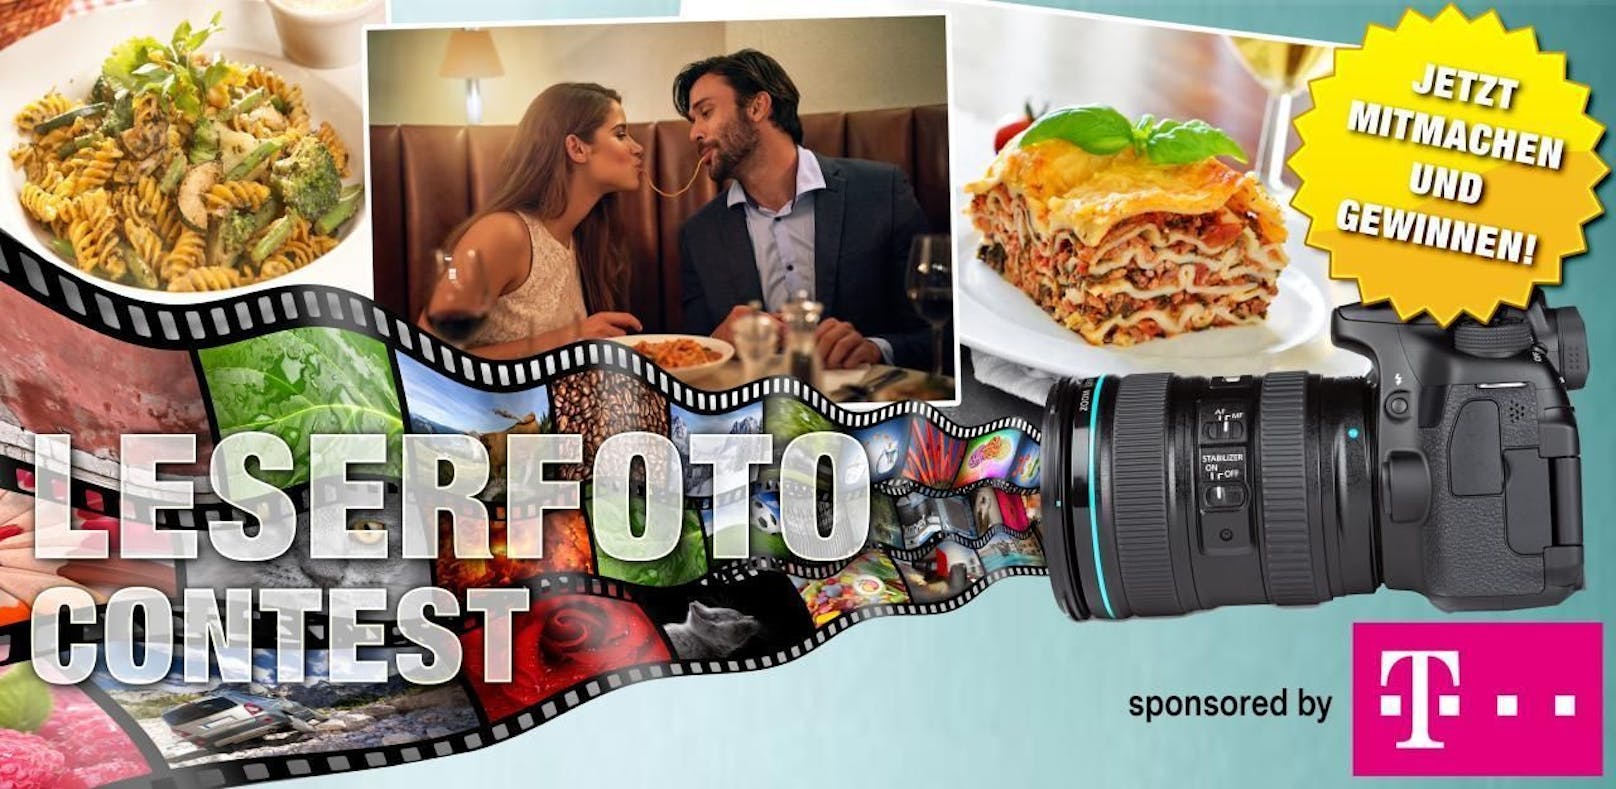 Im Oktober wird das beste Pasta-Foto gesucht: Jetzt teilnehmen &amp; Smartphone gewinnen!